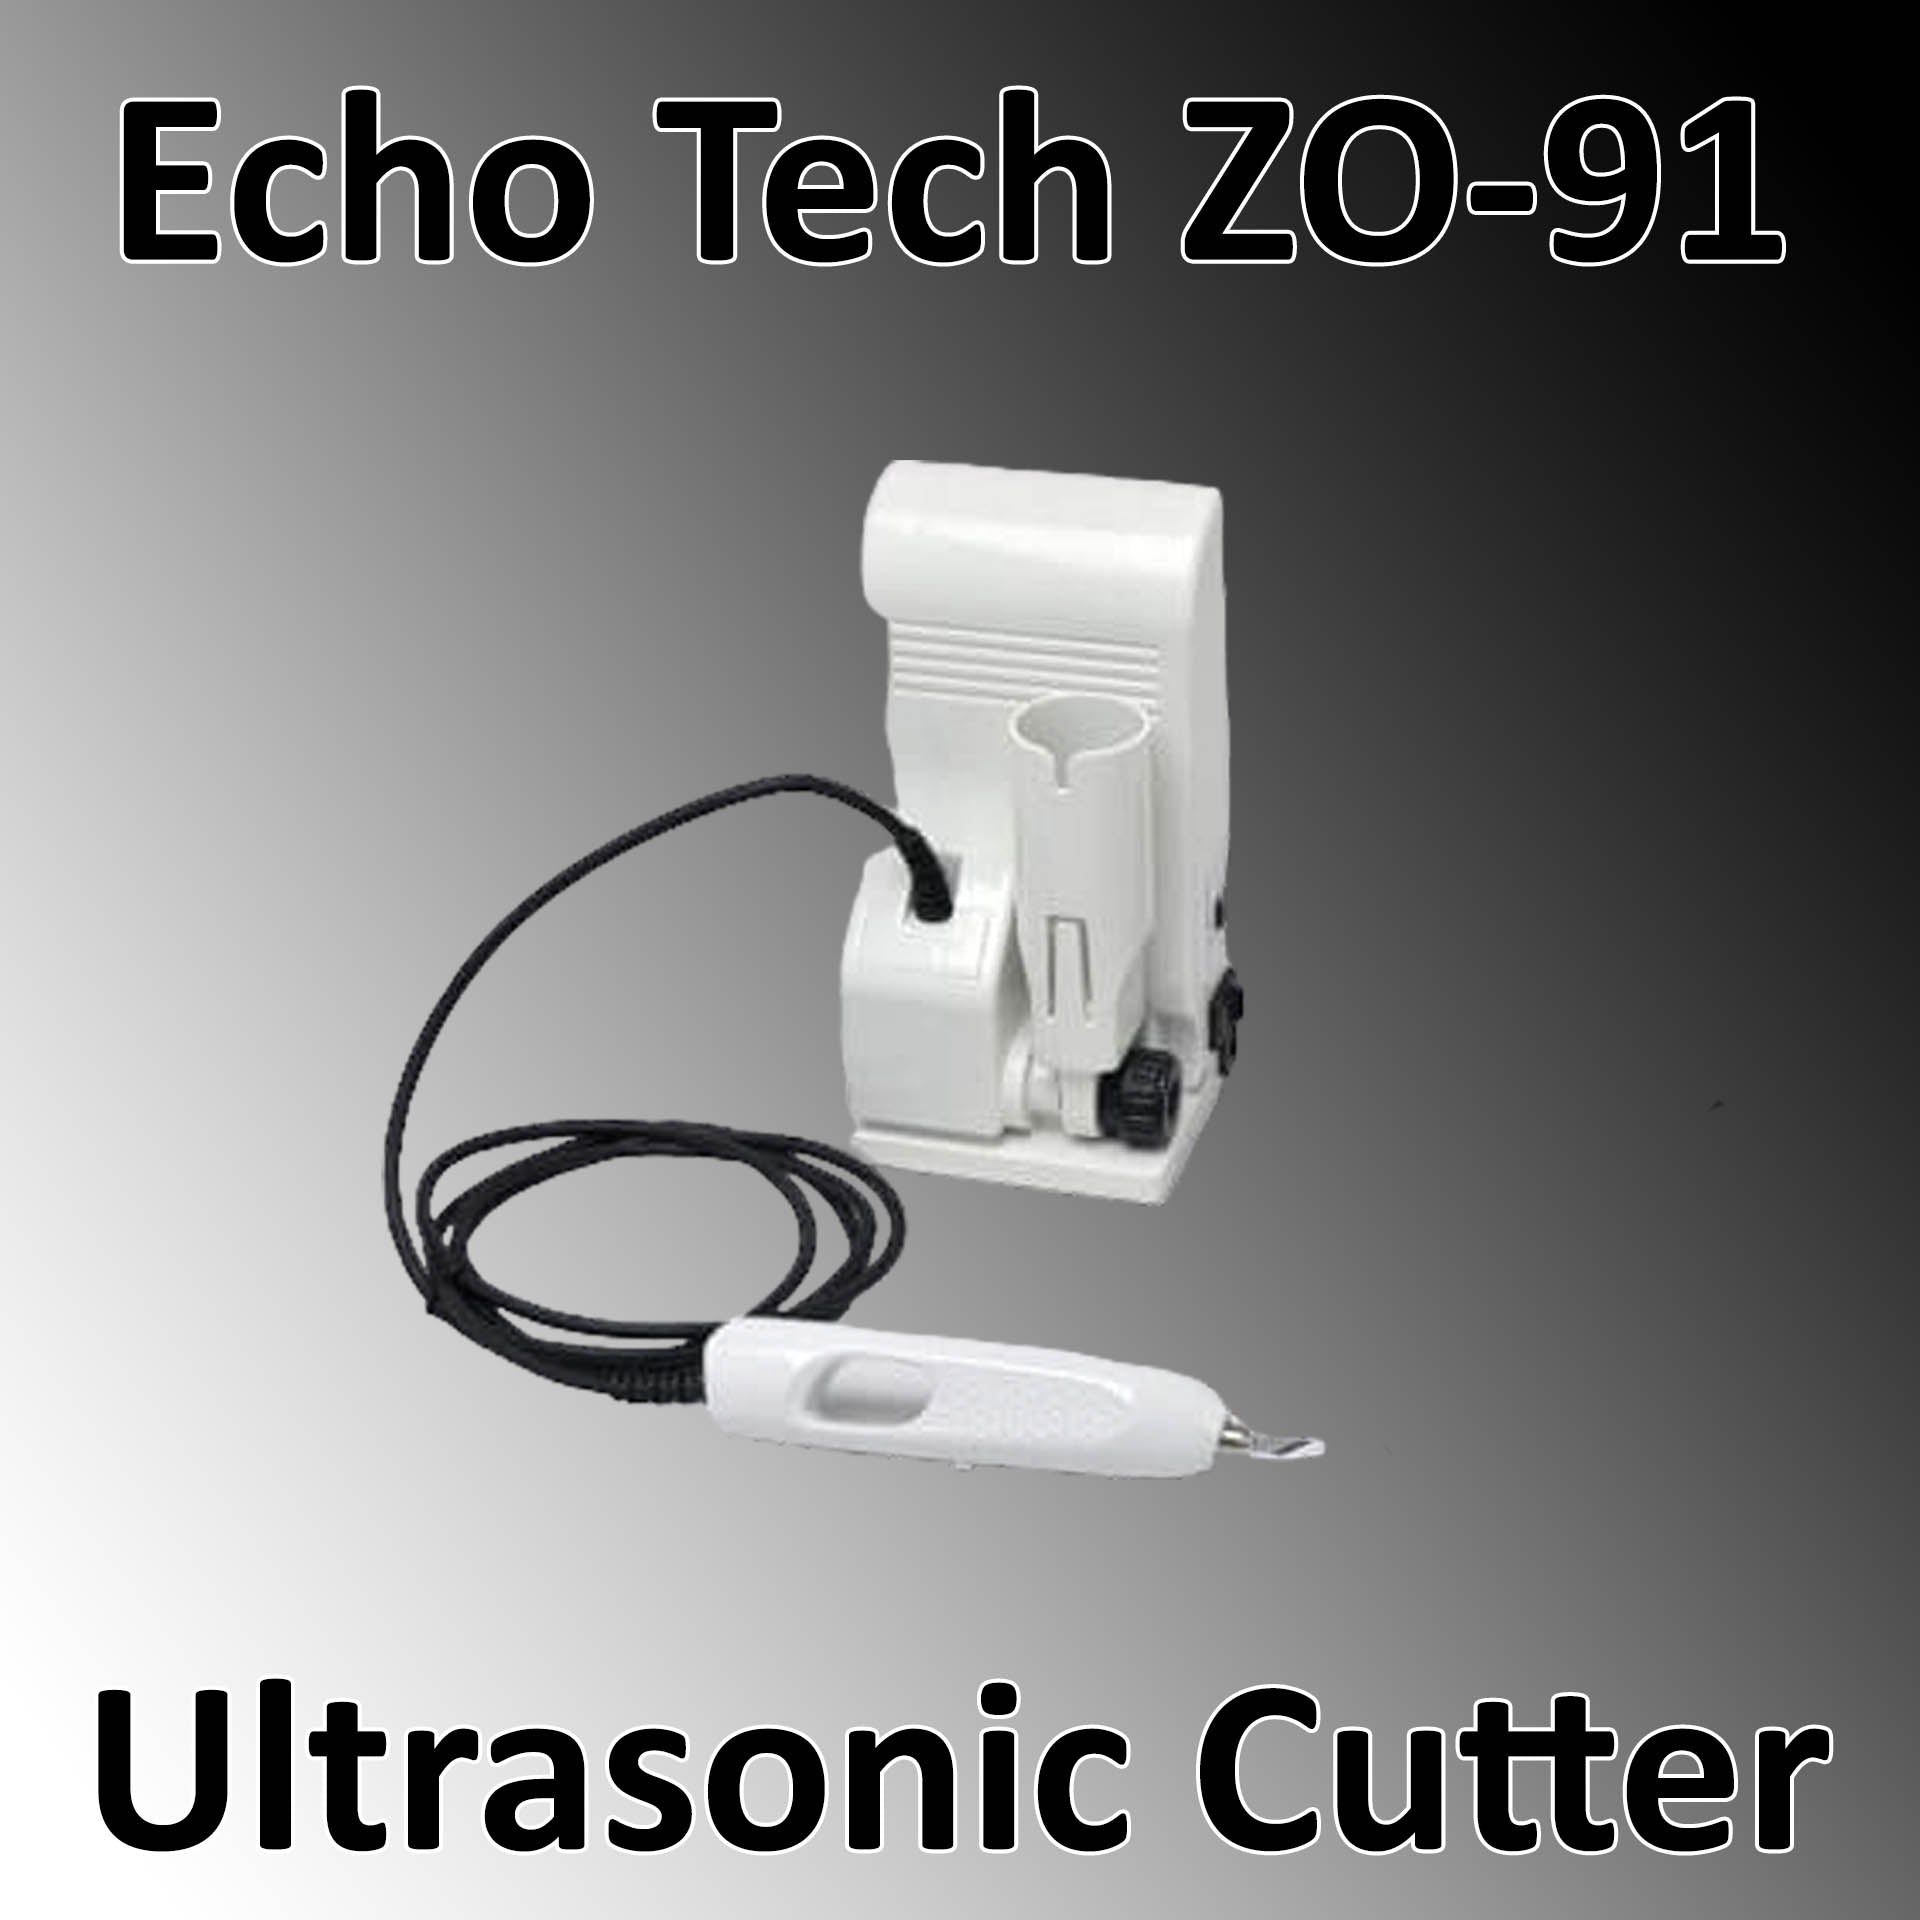 Express ZO 91 Ultrasonic Cutter White Echo Tech HONDA AC 100 - 240 V